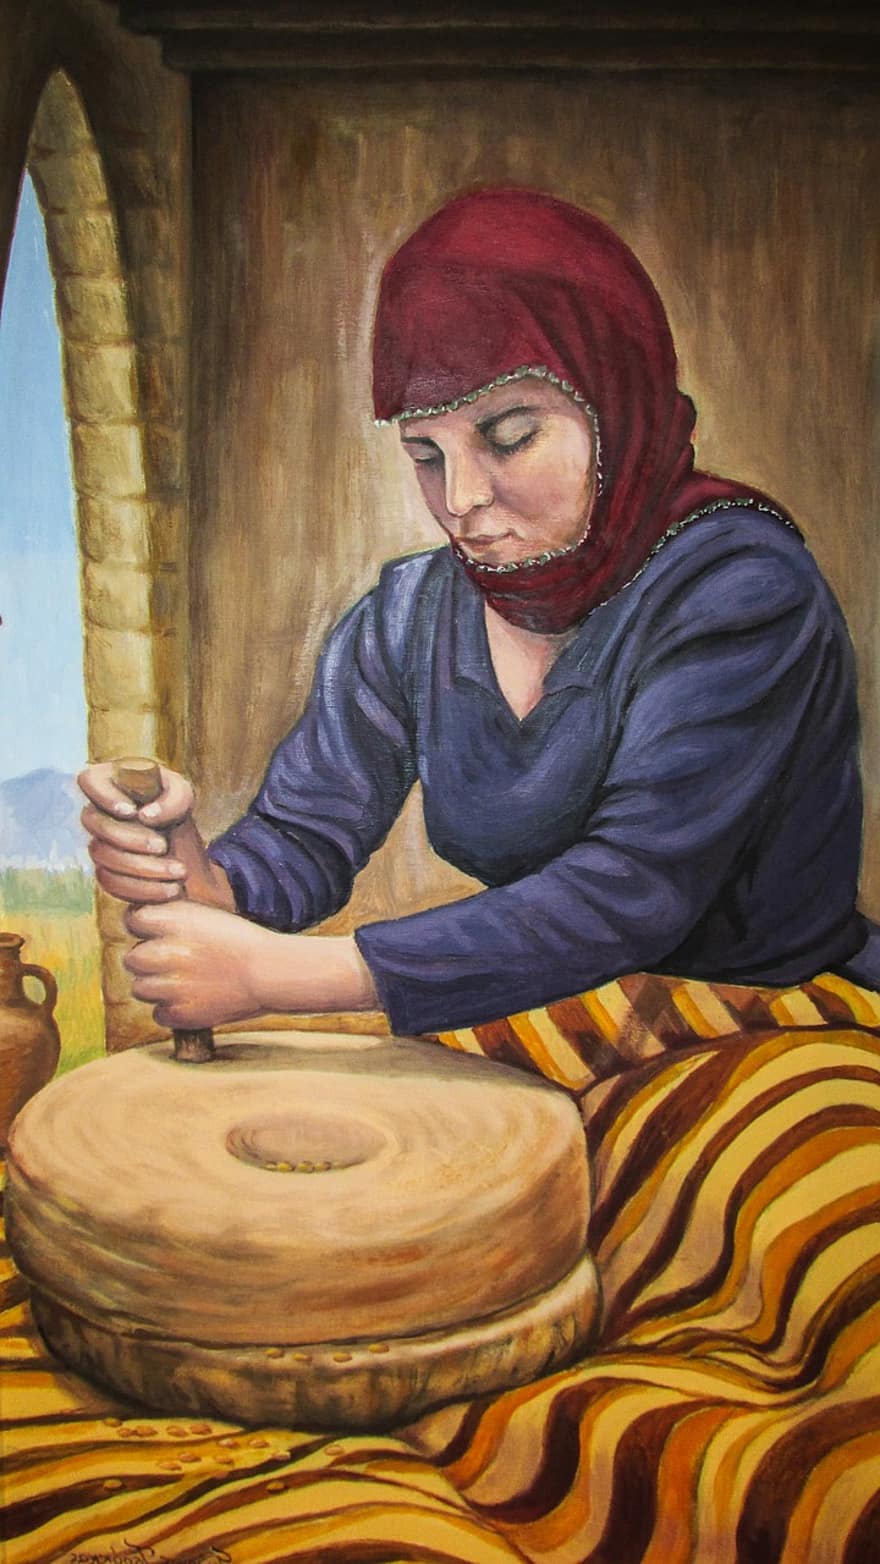 Kypr, pekařství, Mletá pšenice, tradiční, malování, chléb, jídlo, pšenice, dherynia, folklórní muzeum